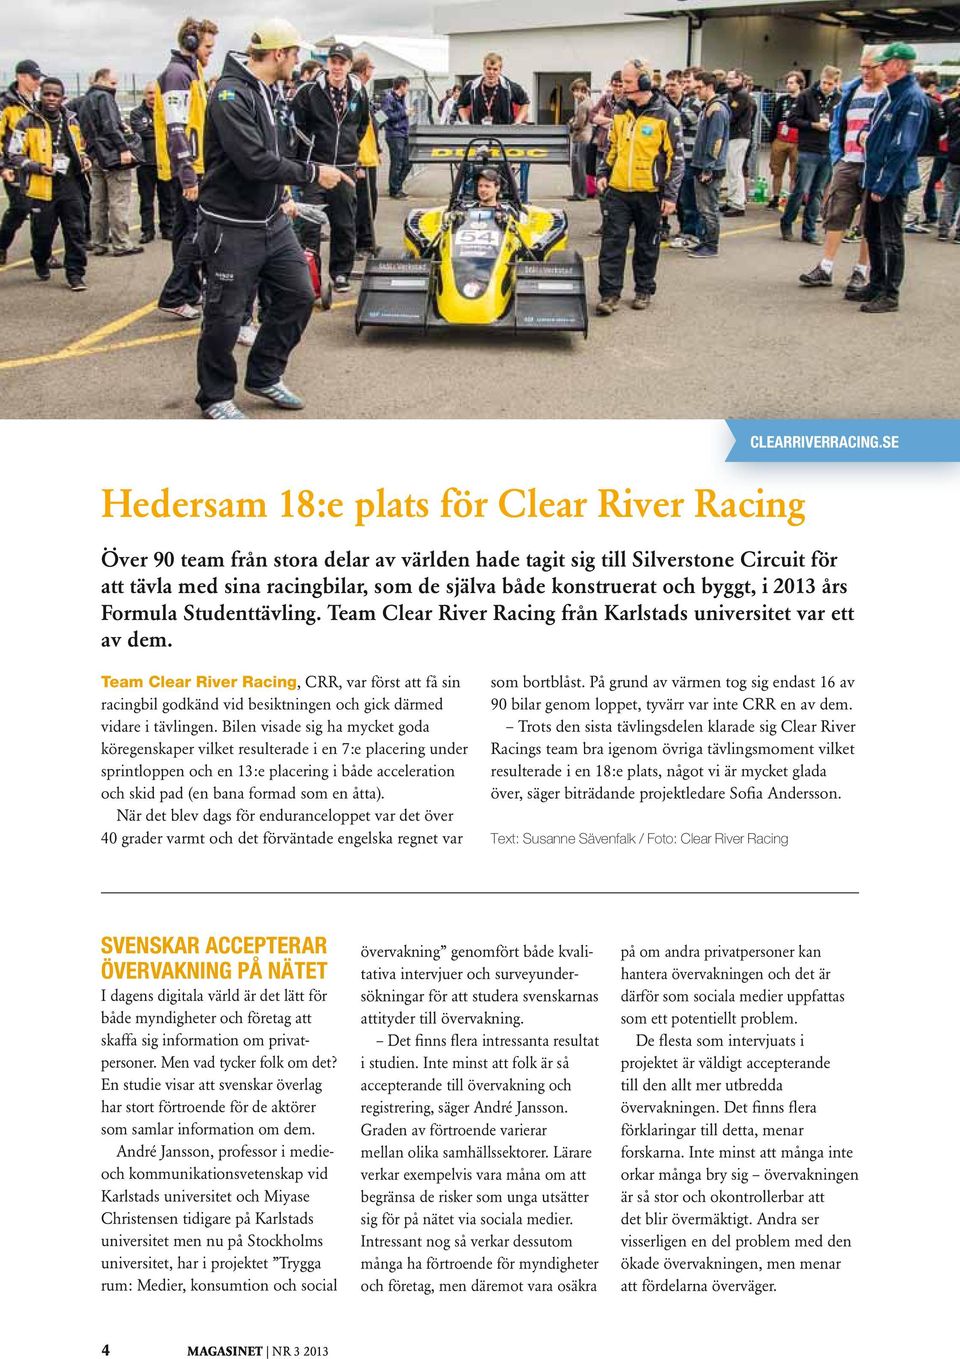 Team Clear River Racing från Karlstads universitet var ett av dem. Team Clear River Racing, CRR, var först att få sin racingbil godkänd vid besiktningen och gick därmed vidare i tävlingen.